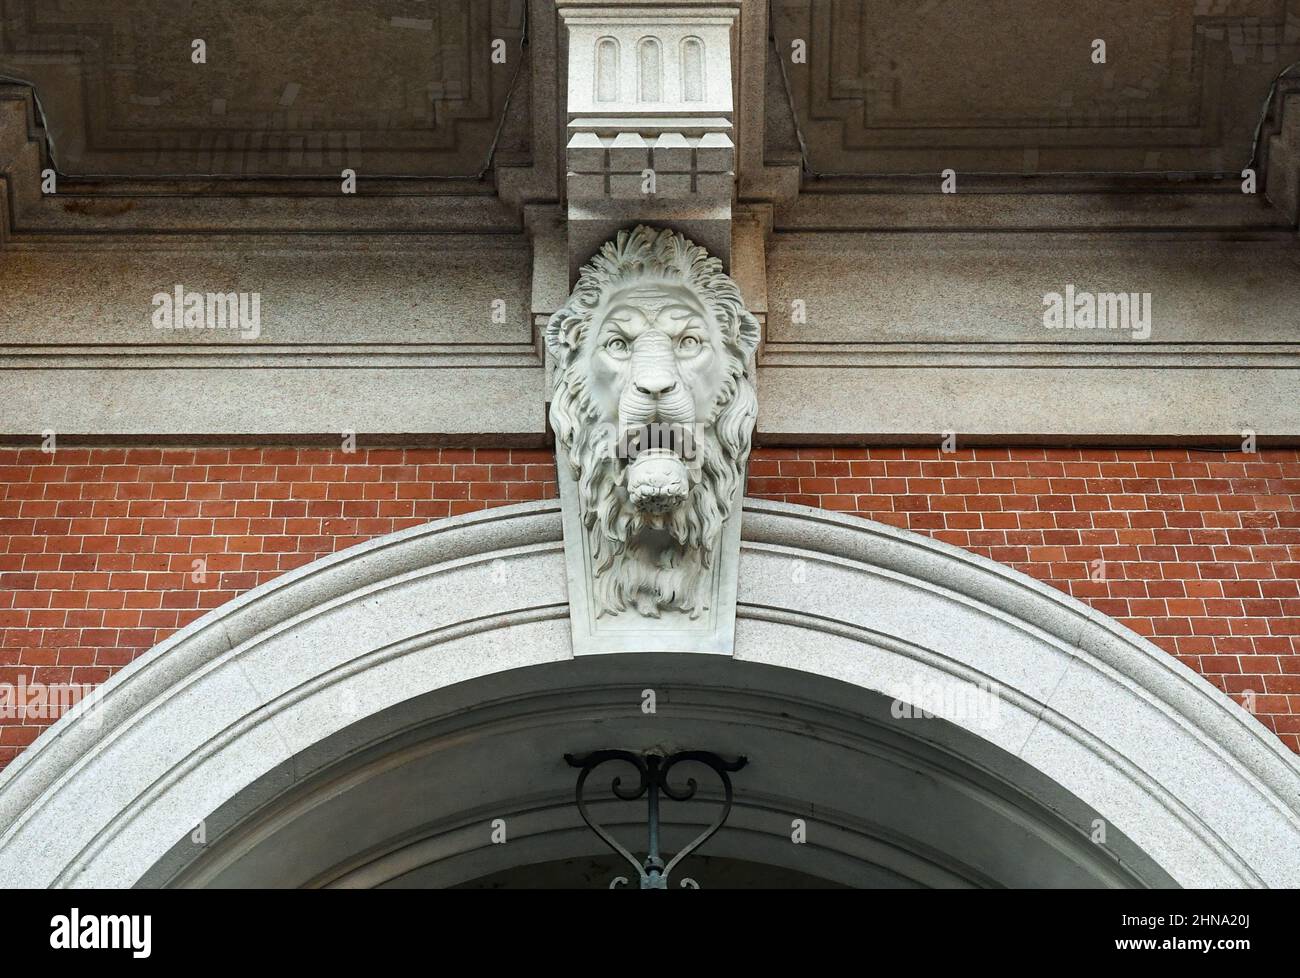 Détail de la façade du Palazzo Carignano avec une sculpture en pierre à tête de lion, Turin, Piémont, Italie Banque D'Images